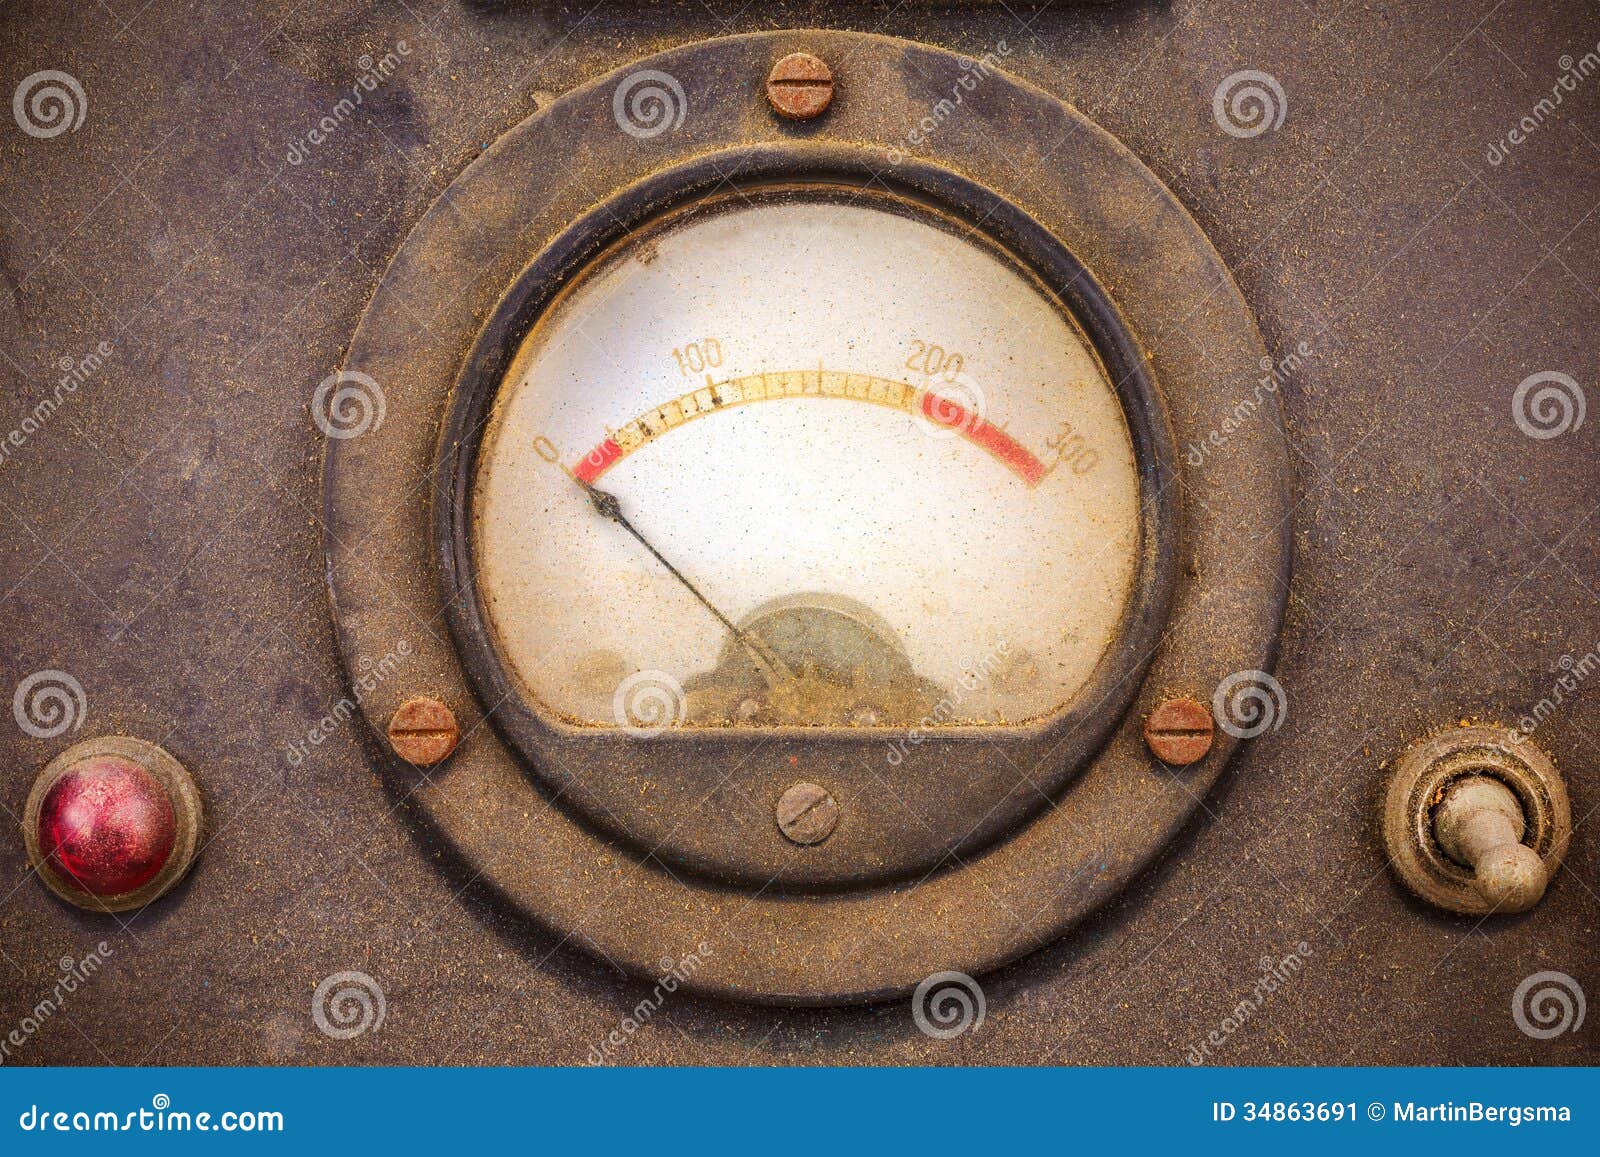 vintage dusty volt meter in a metal casing